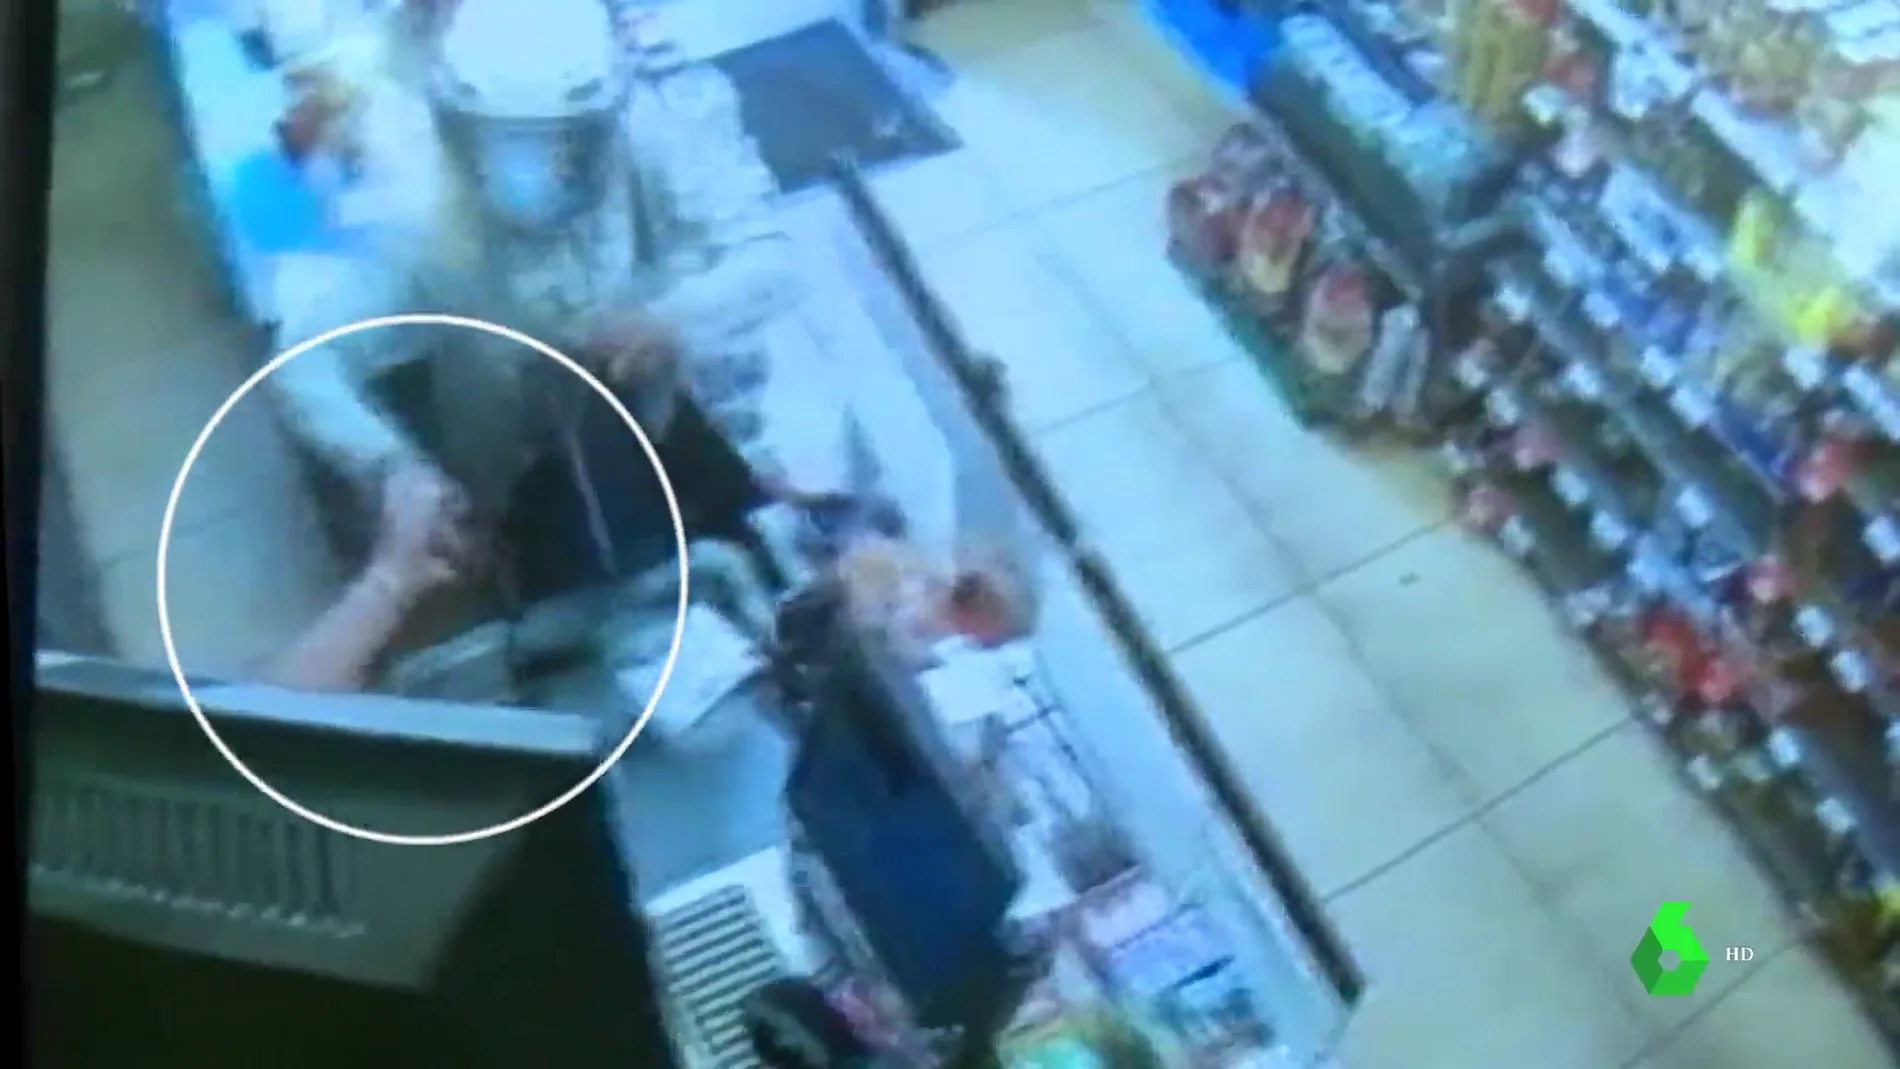 Una cajera de supermercado frustra un atraco abalanzándose sobre el ladrón y le obliga a salir huyendo